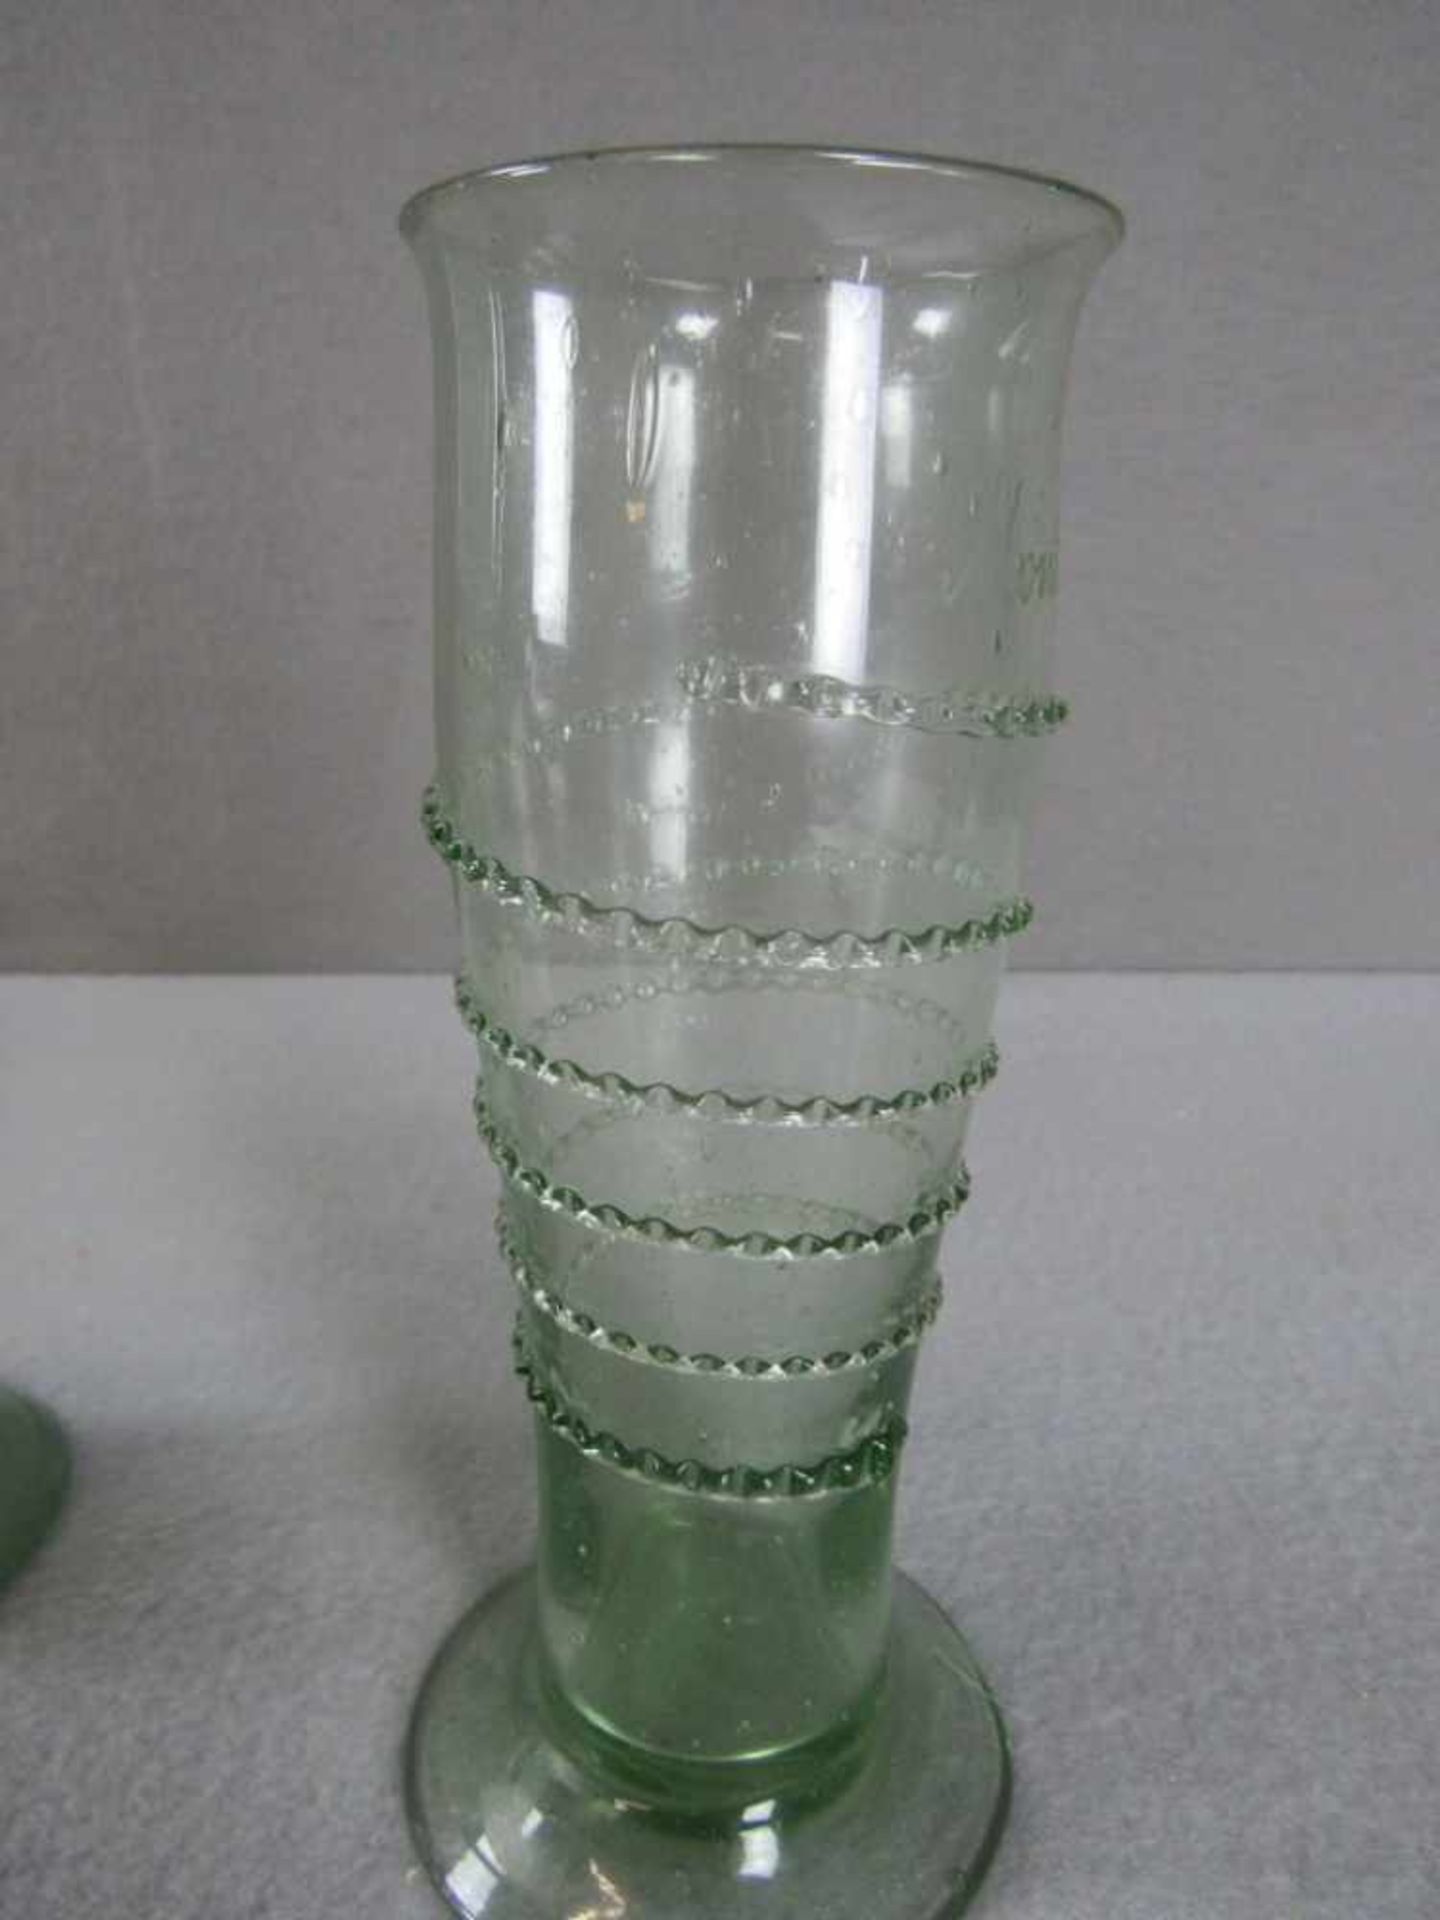 2 Gläser Glas antik umlaufend mit Schnur Lufteinschlüsse grünschimmernd bezeichnet oberhalb - Image 3 of 3